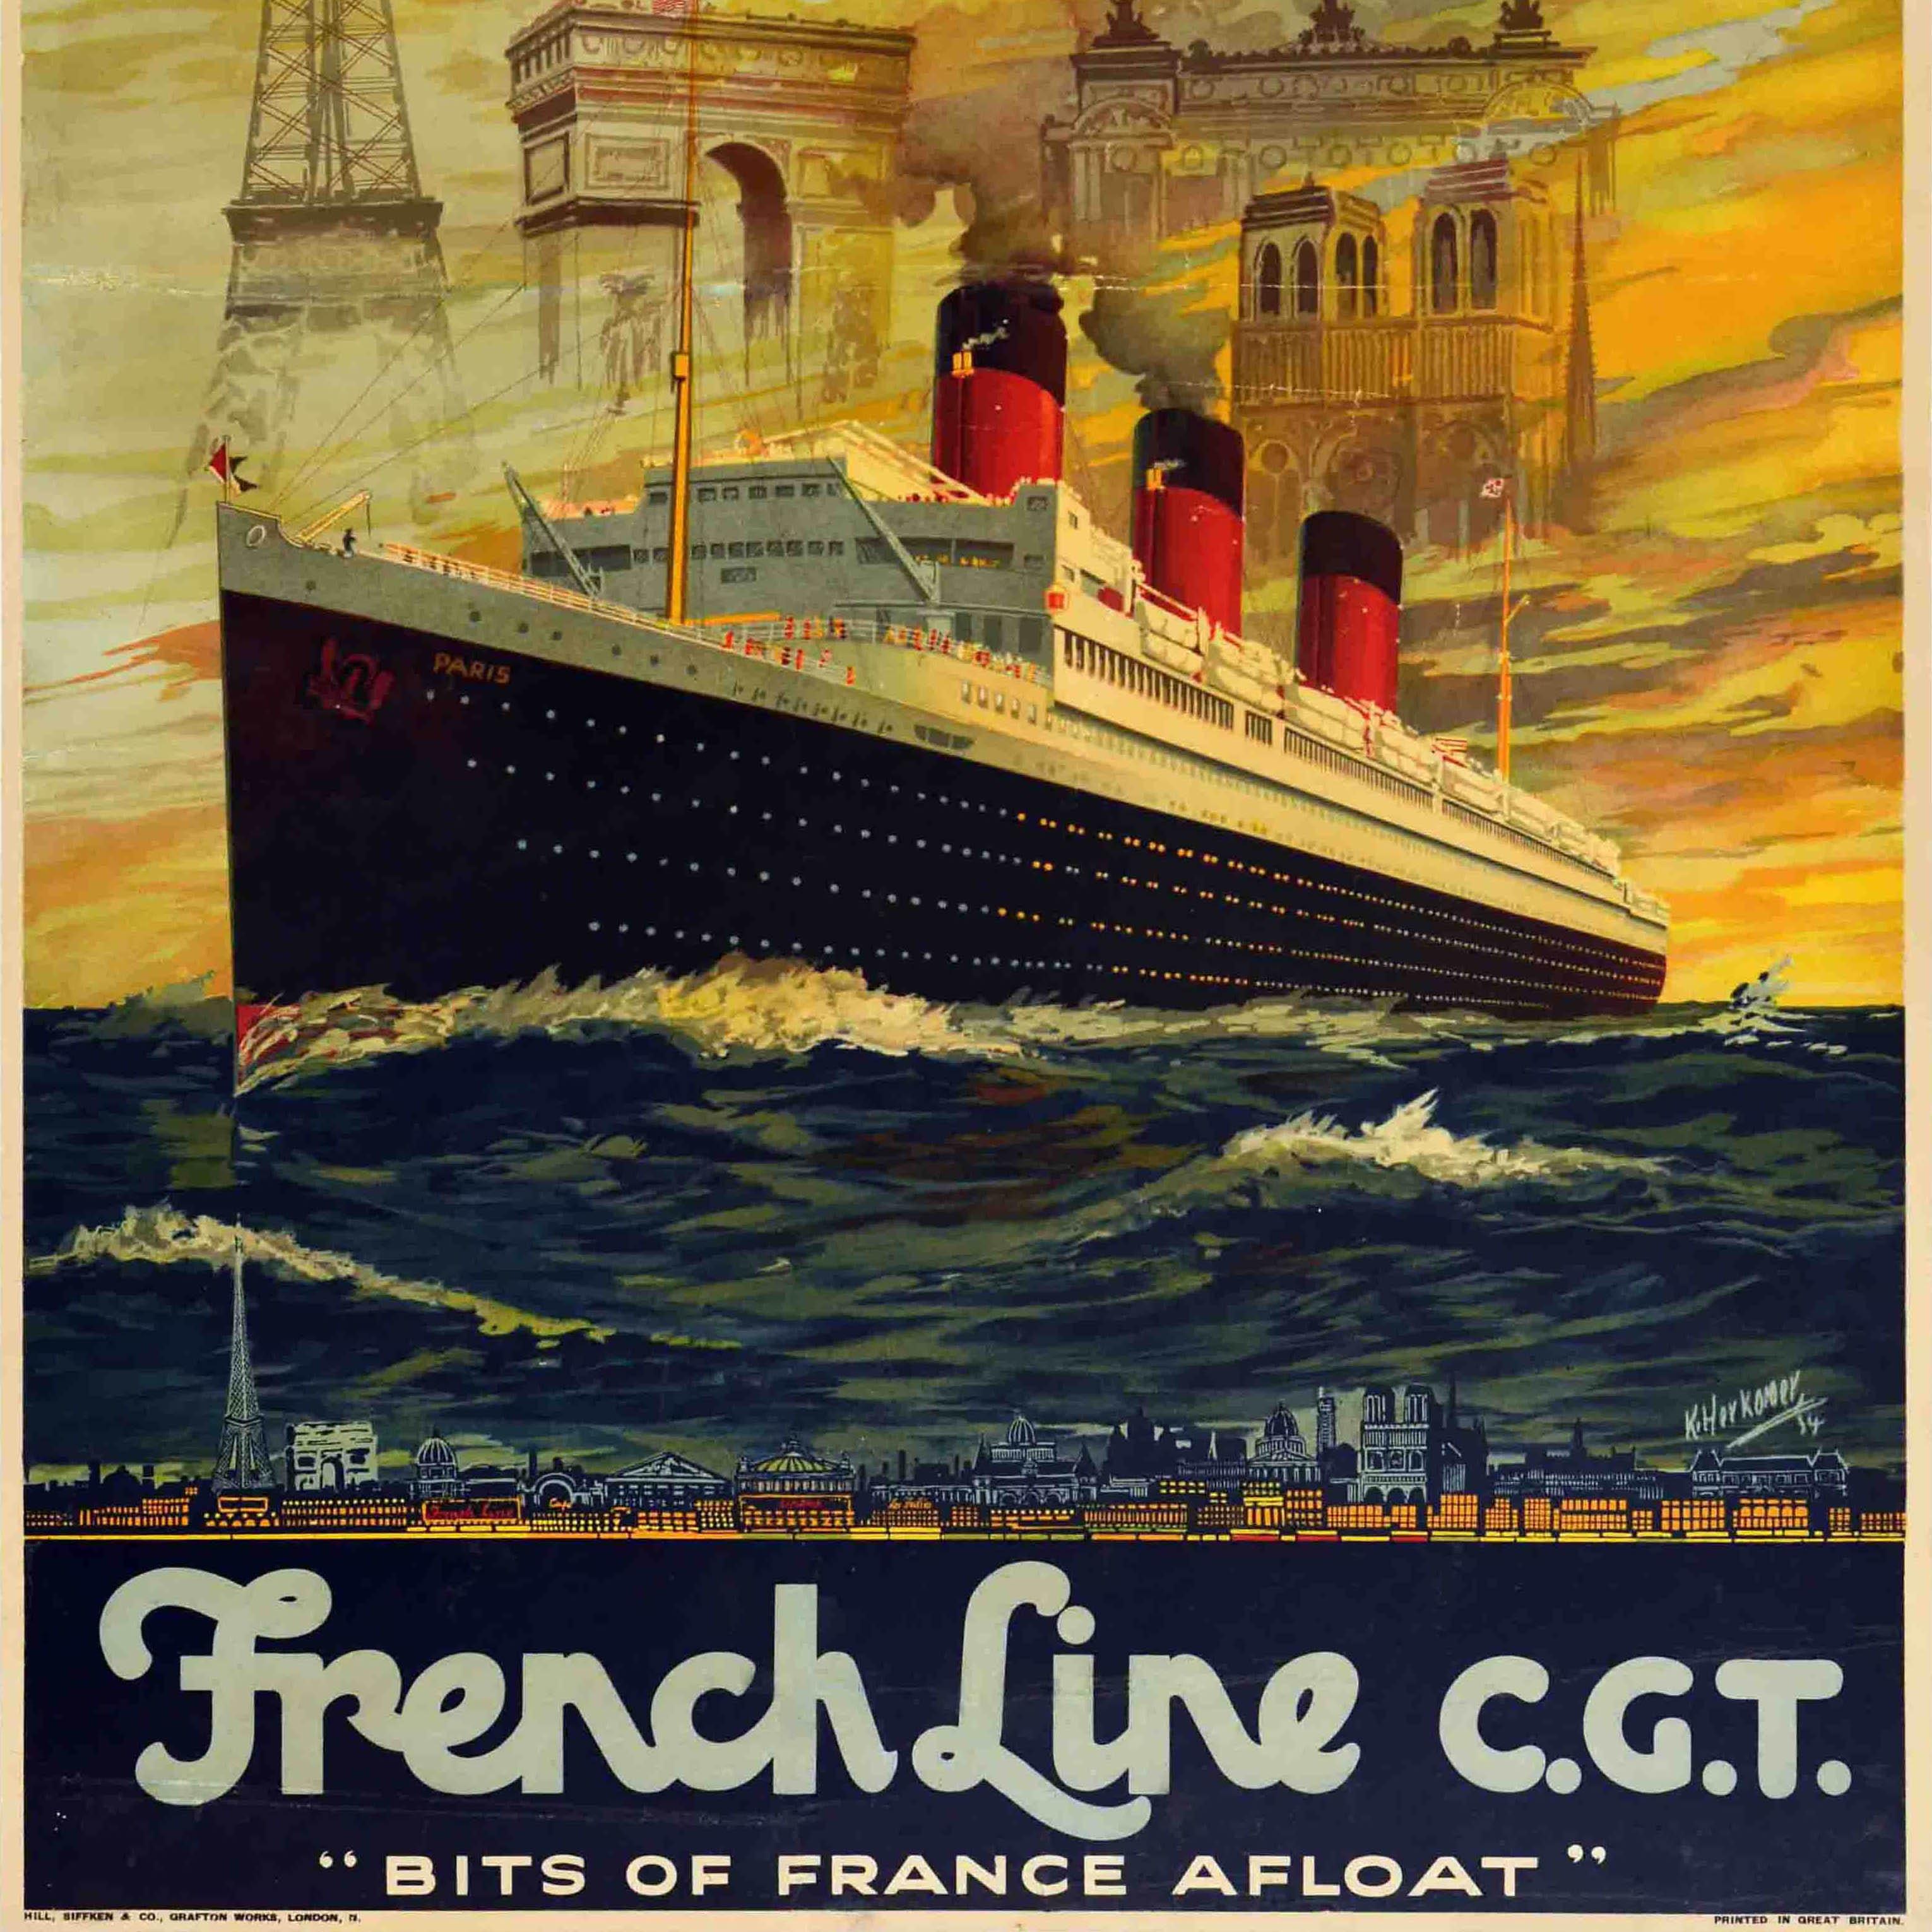 Original Vintage-Kreuzfahrtplakat - Paris auf dem Weg nach Europa Wenn Sie an Bord eines Schiffes der French Line gehen, sind Sie direkt in Paris! Französische Linie CGT Bits of France flott gemacht. Atemberaubendes Design mit dem Ozeandampfer SS